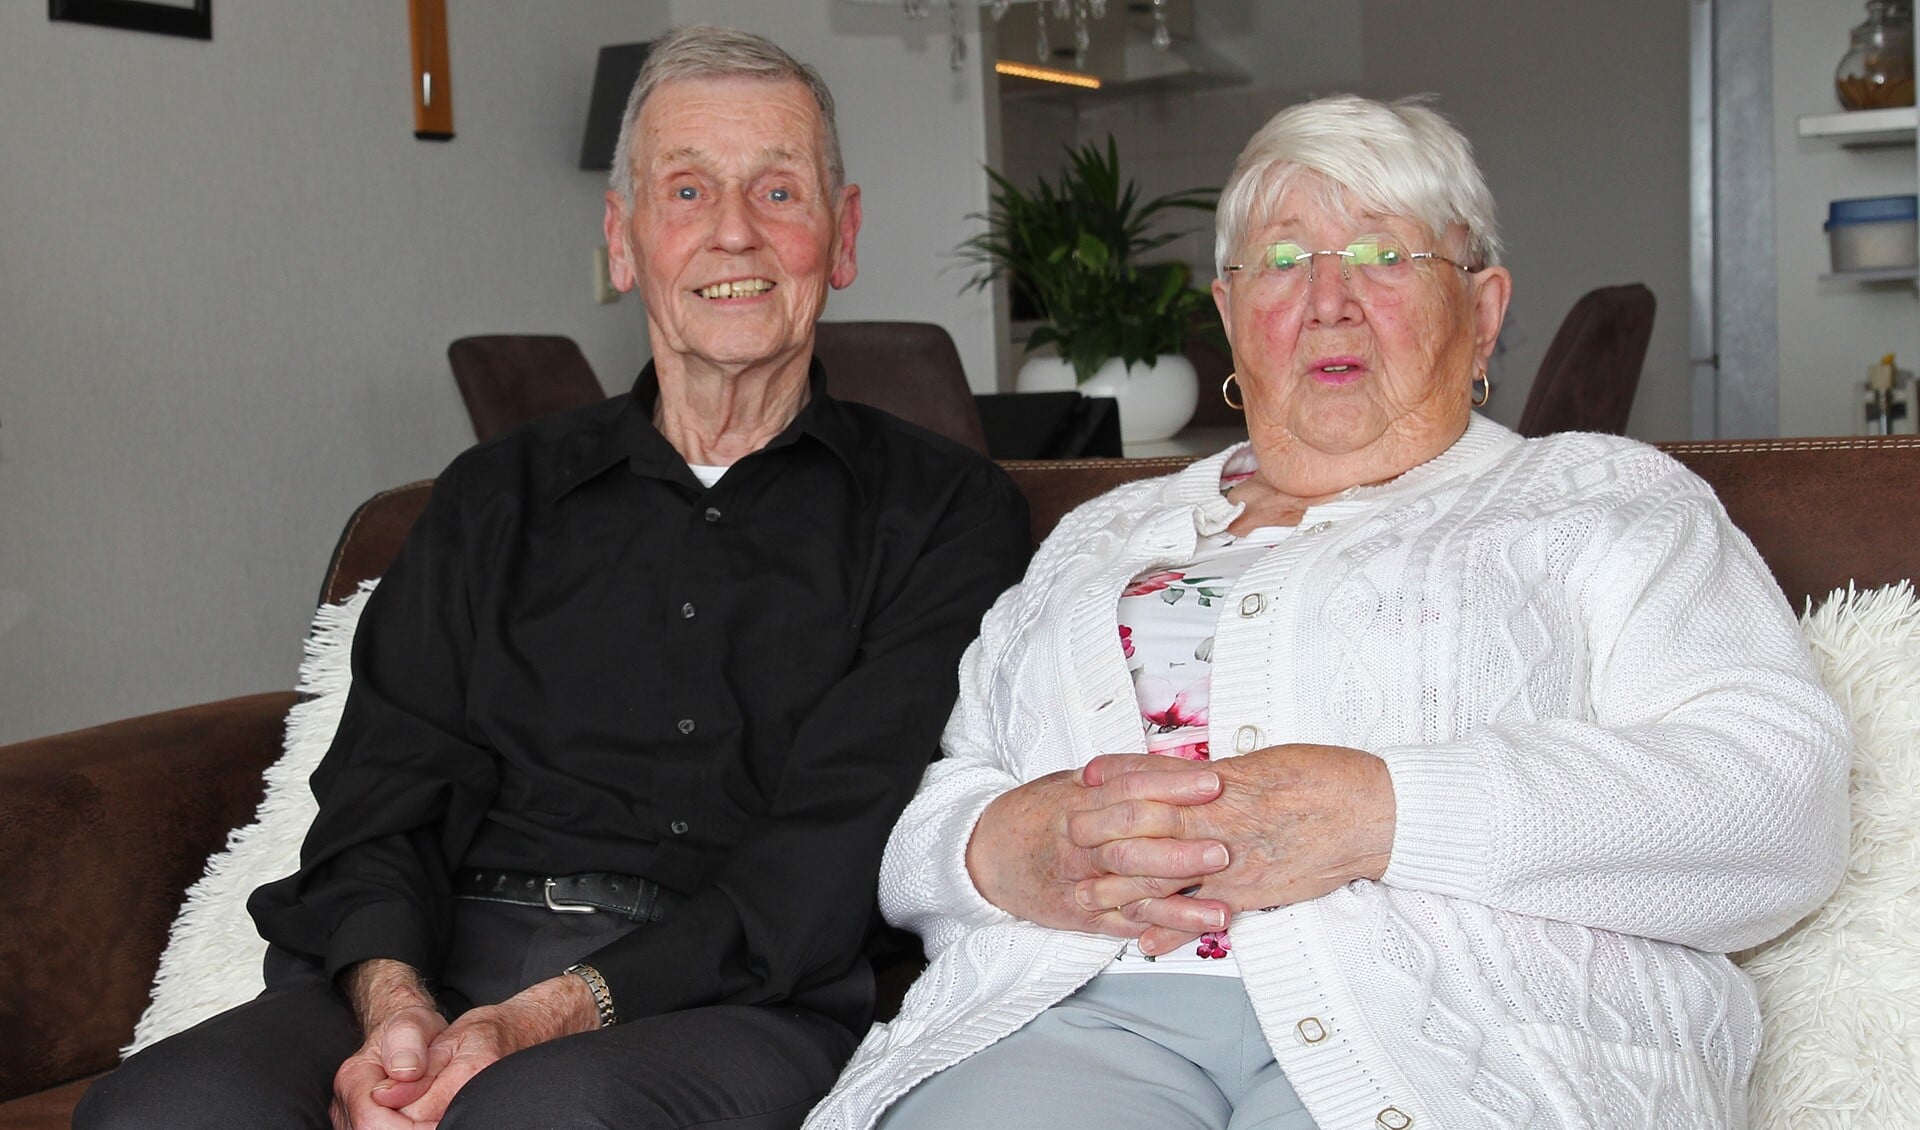 'Ome' Joop en 'tante' Corry waren heel actief voor hun voetbalcluppie EDS in de Rotterdamse Spaanse Polder. 